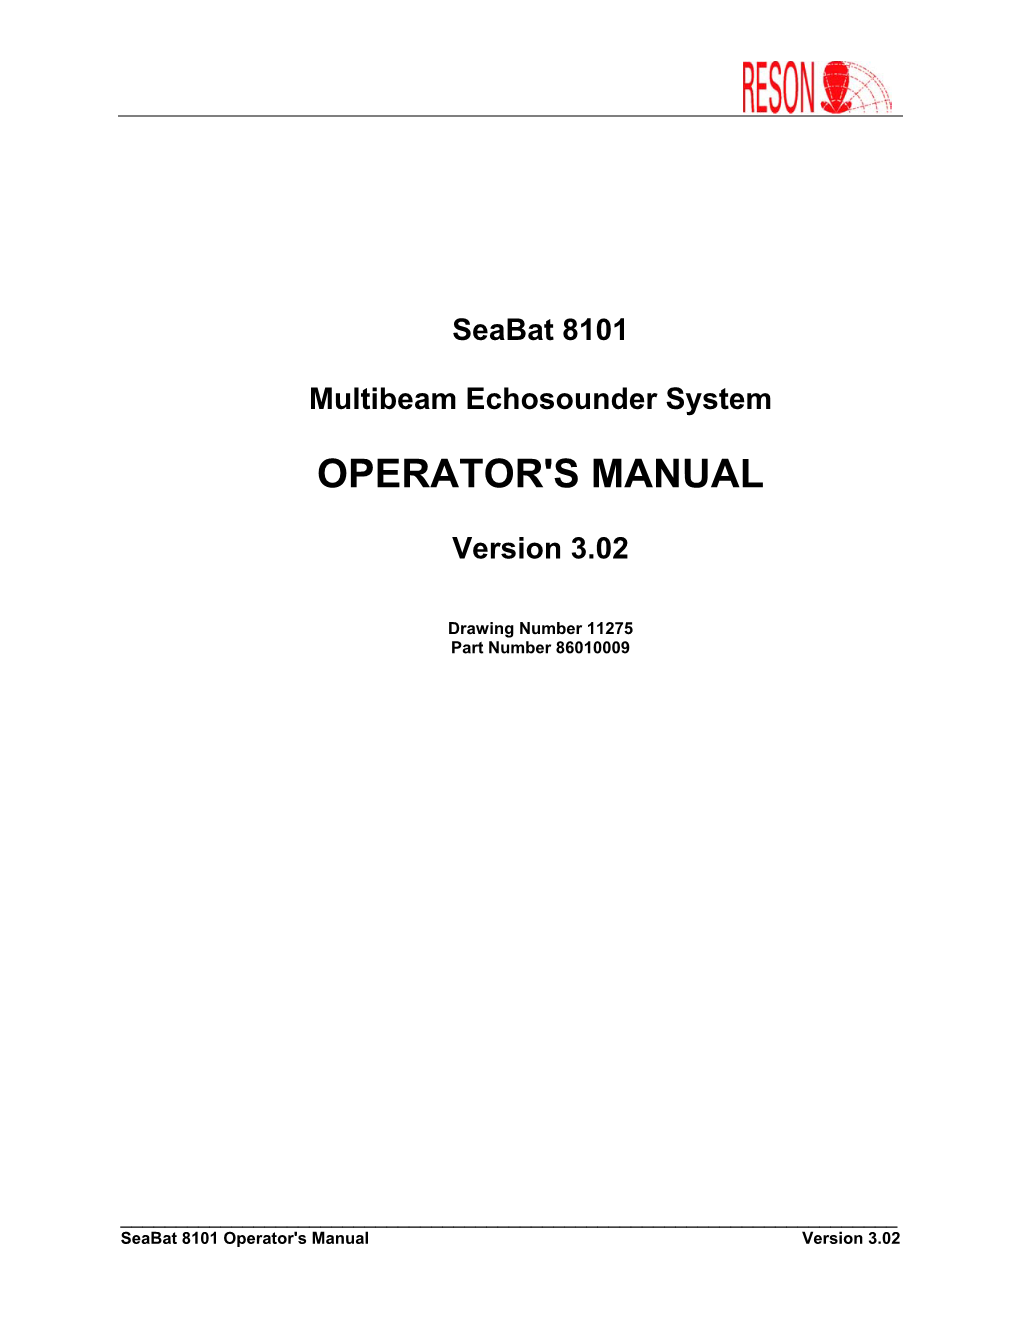 Seabat 8101 Operator's Manual Version 3.02